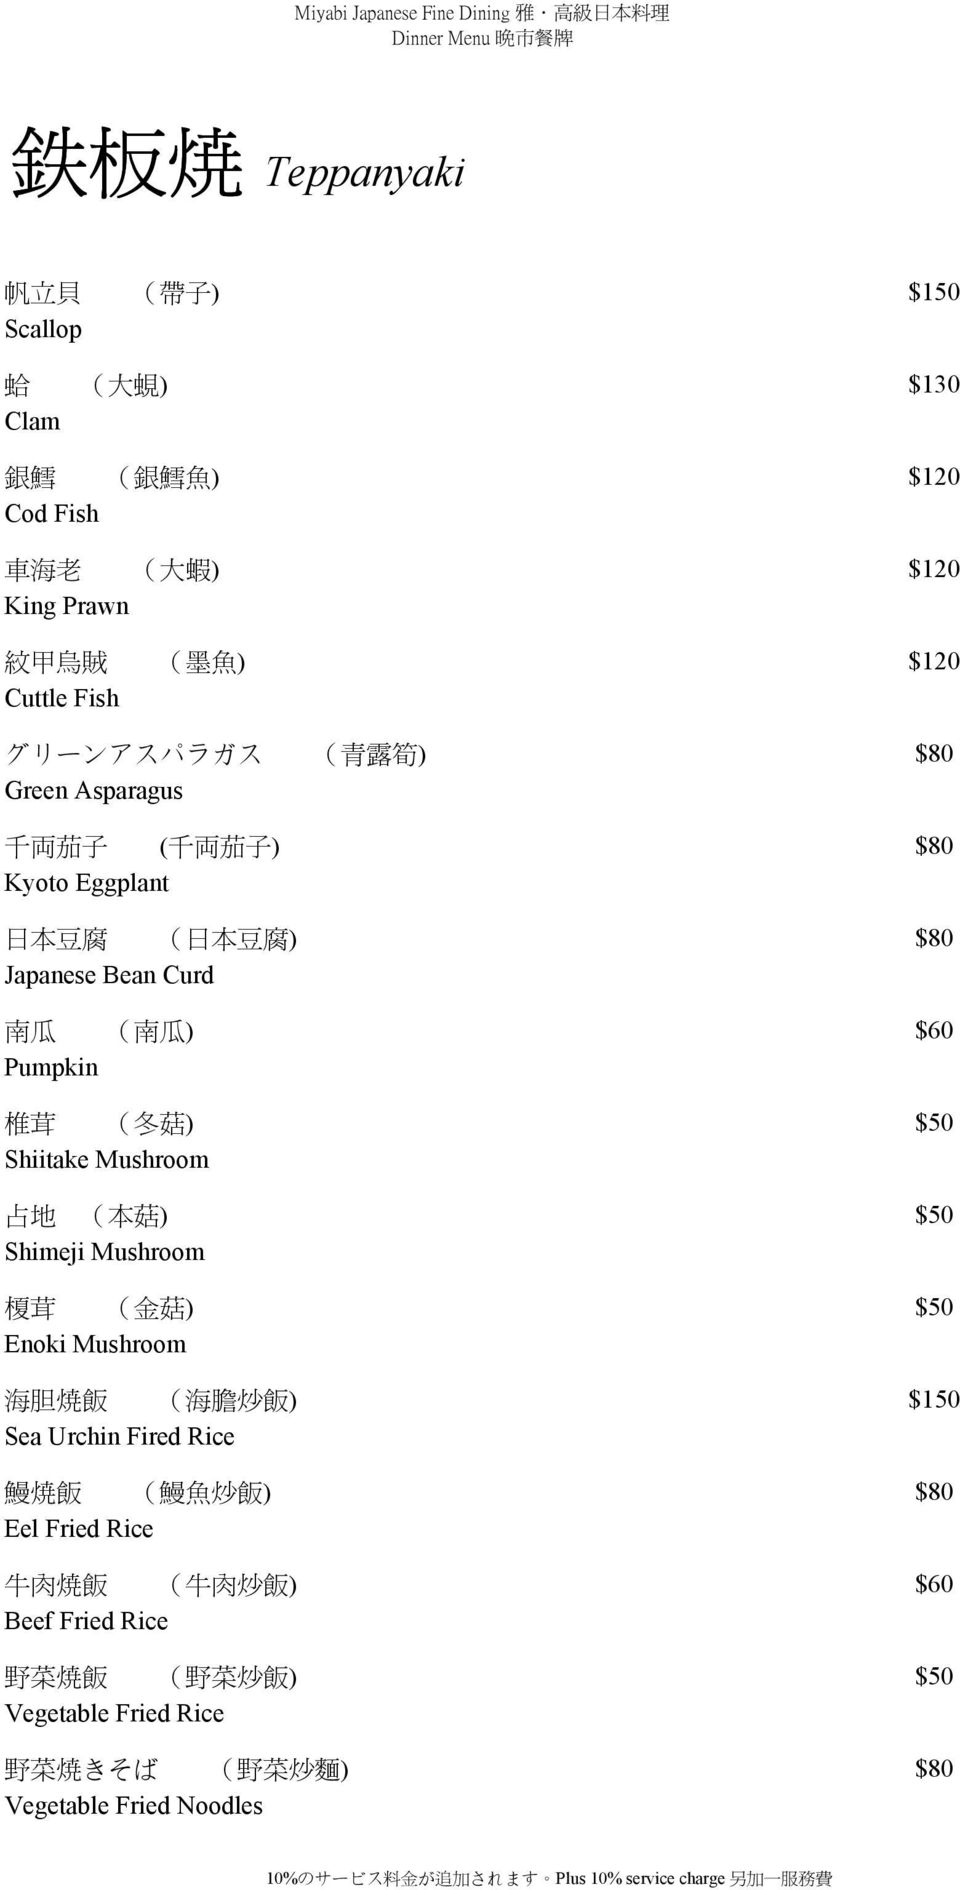 菇 ) $50 Shiitake Mushroom 占 地 ( 本 菇 ) $50 Shimeji Mushroom 榎 茸 ( 金 菇 ) $50 Enoki Mushroom 海 胆 焼 飯 ( 海 膽 炒 飯 ) $150 Sea Urchin Fired Rice 鰻 焼 飯 ( 鰻 魚 炒 飯 )